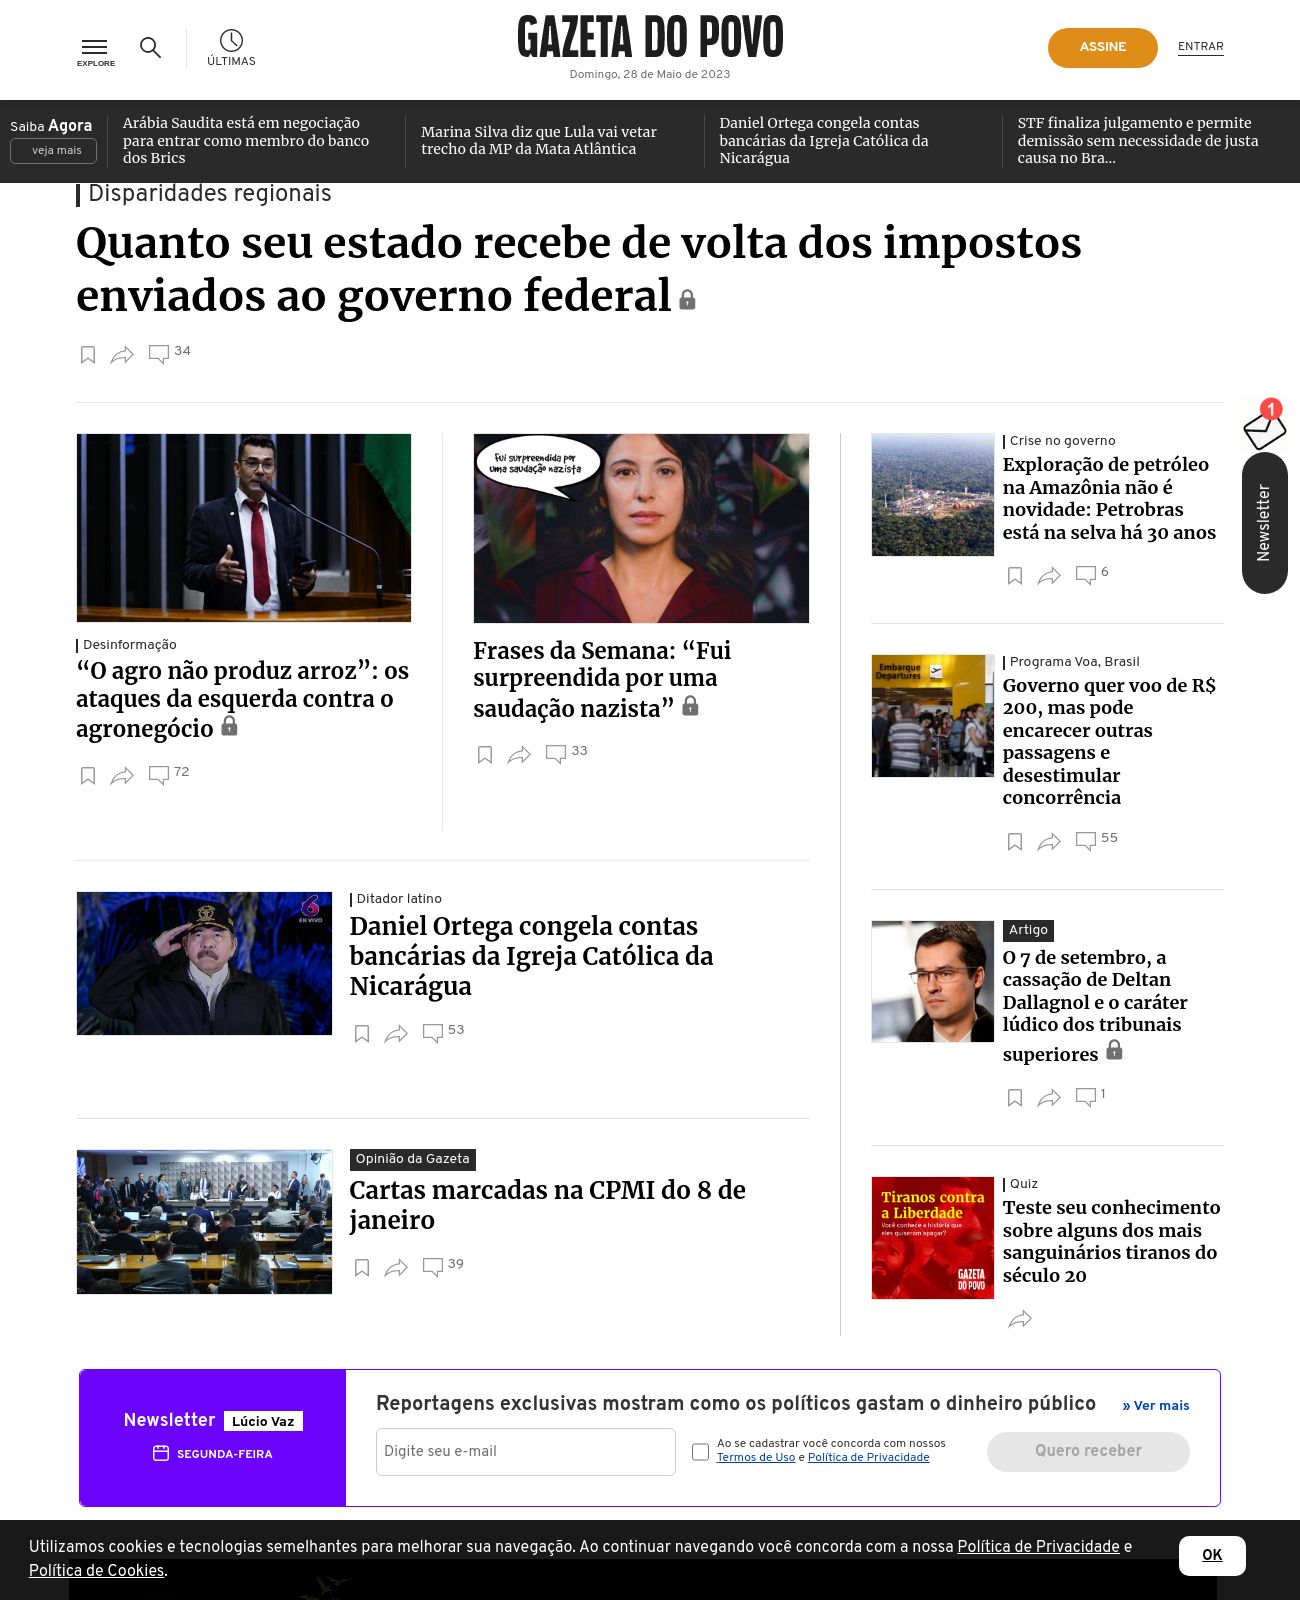 Gazeta do Povo at 2023-05-28 11:04:29-03:00 local time